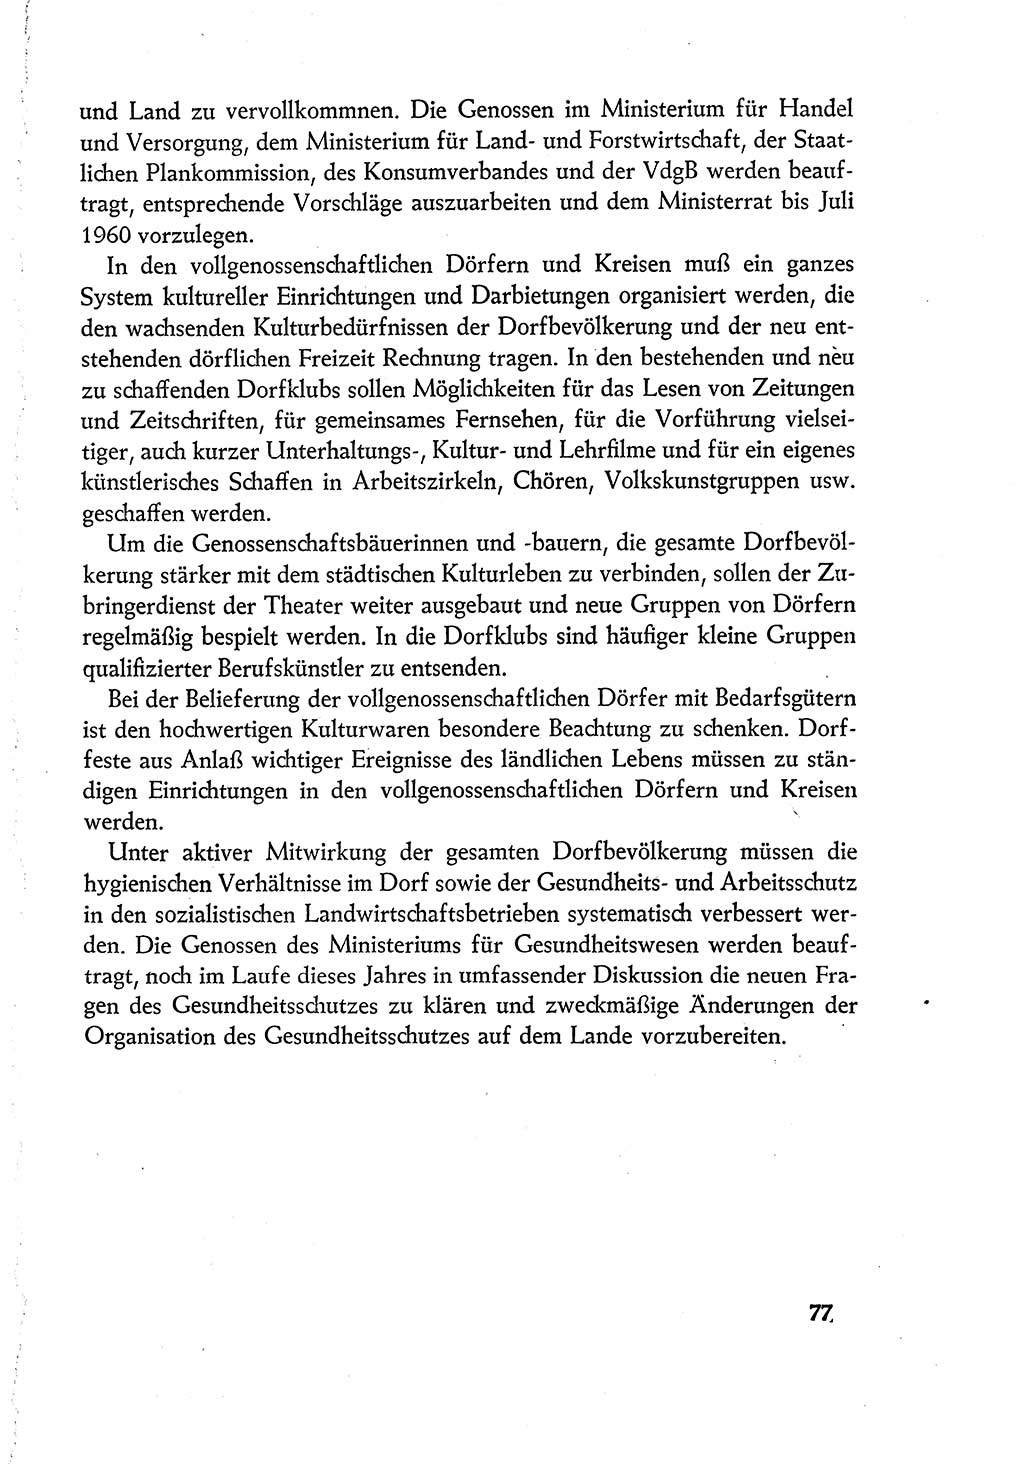 Dokumente der Sozialistischen Einheitspartei Deutschlands (SED) [Deutsche Demokratische Republik (DDR)] 1960-1961, Seite 77 (Dok. SED DDR 1960-1961, S. 77)